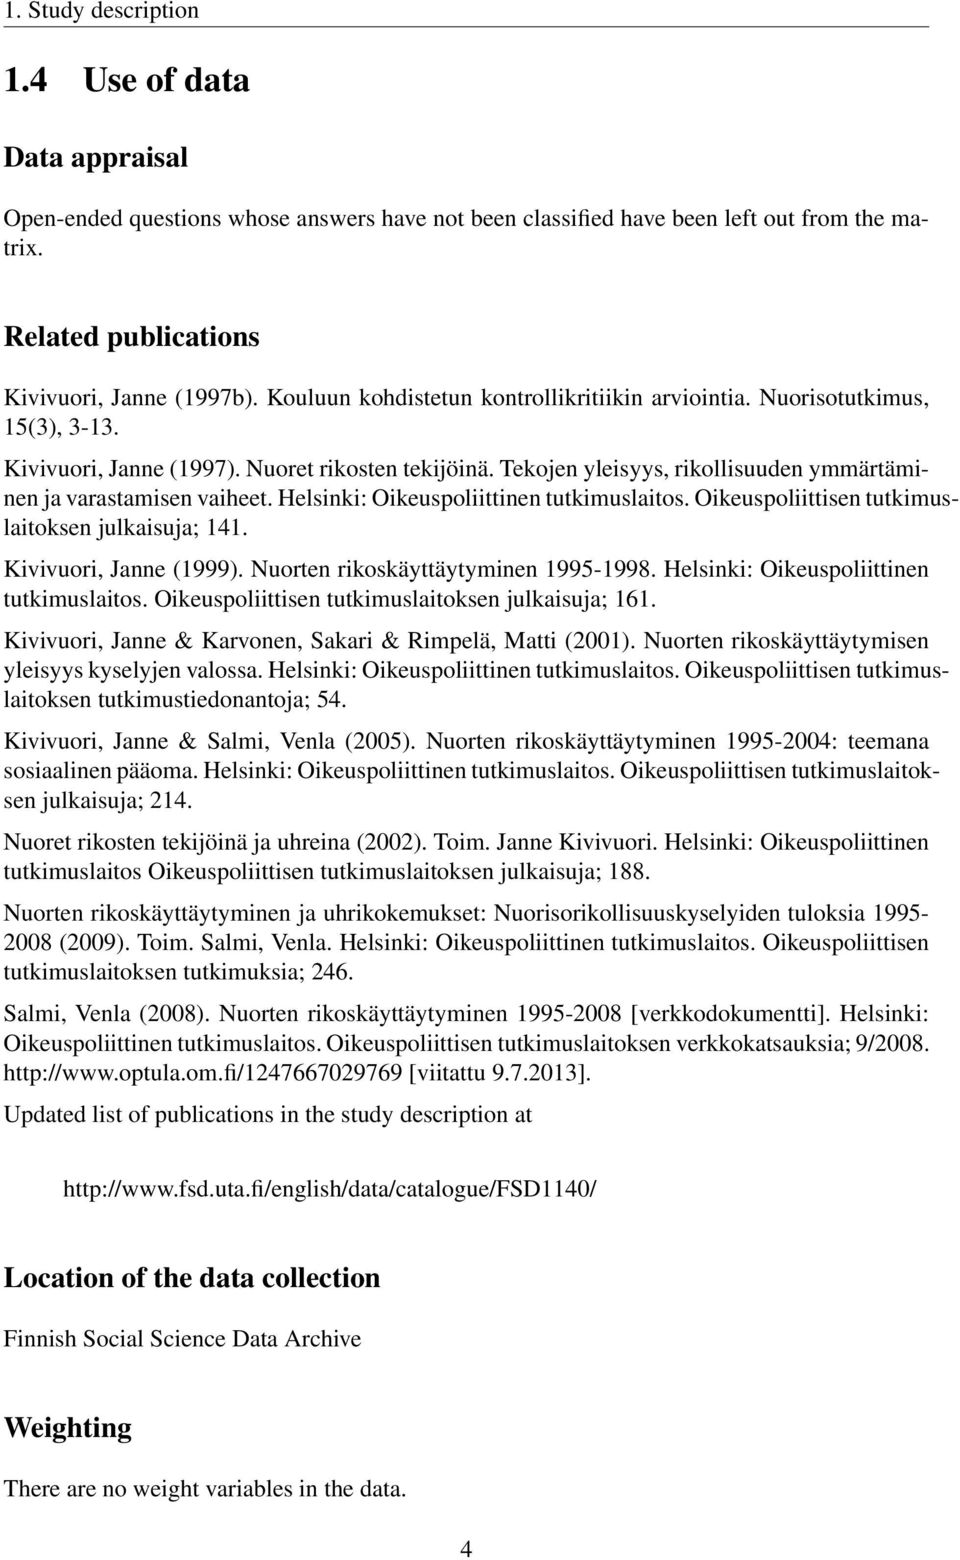 Tekojen yleisyys, rikollisuuden ymmärtäminen ja varastamisen vaiheet. Helsinki: Oikeuspoliittinen tutkimuslaitos. Oikeuspoliittisen tutkimuslaitoksen julkaisuja; 141. Kivivuori, Janne (1999).